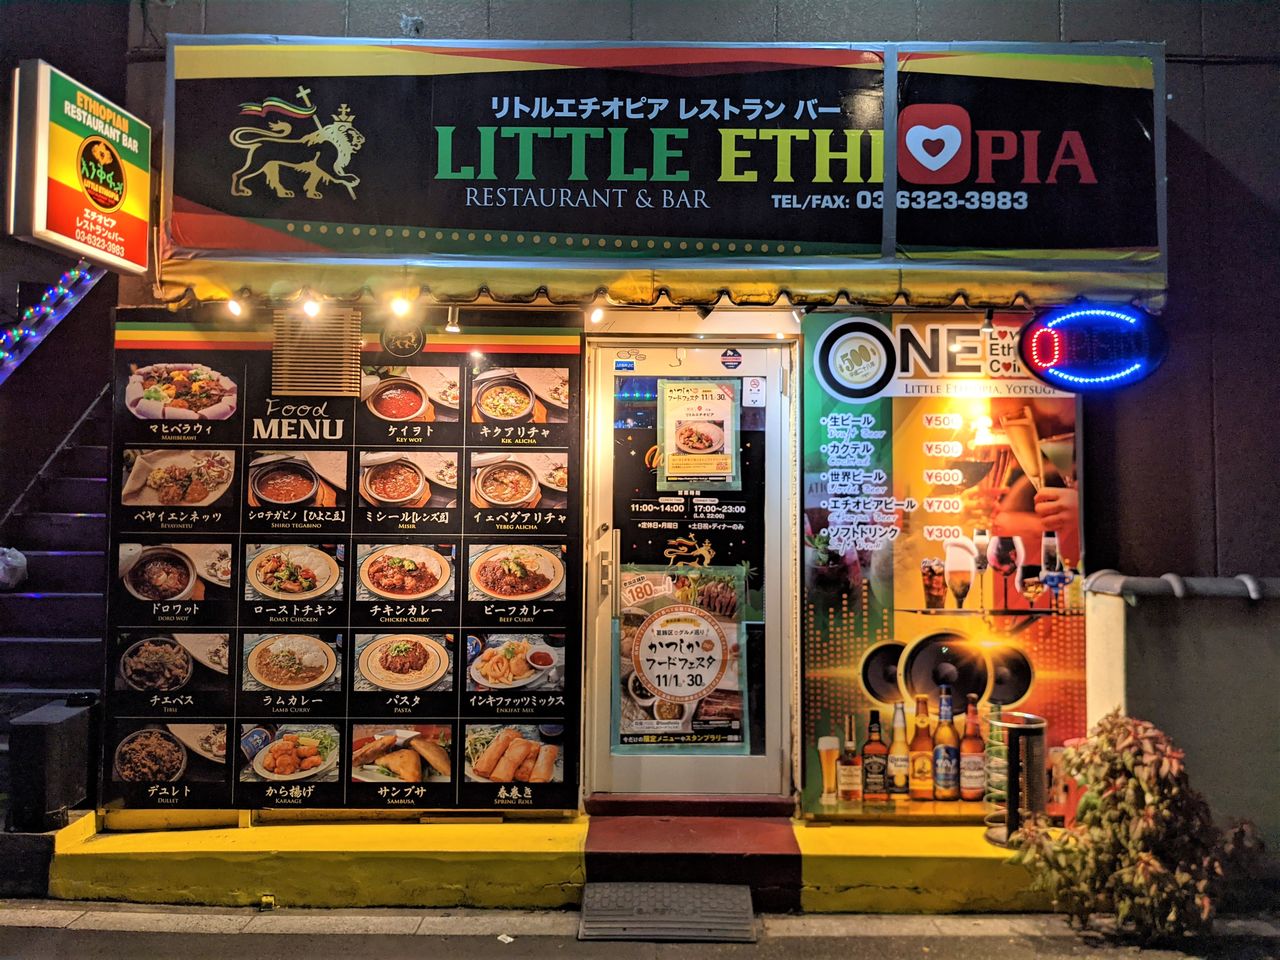  يبرز مطعم ليتل إثيوبيا في محيطه الواقع على ضفاف نهر أراكاوا. وقد تكون الألوان الزاهية في الخارج طاغية، ولكن بالداخل توجد مساحة هادئة حيث يوفر إفريم الودود وزوجته مينا للمرتادين، الضيافة على الطريقة الإثيوبية.